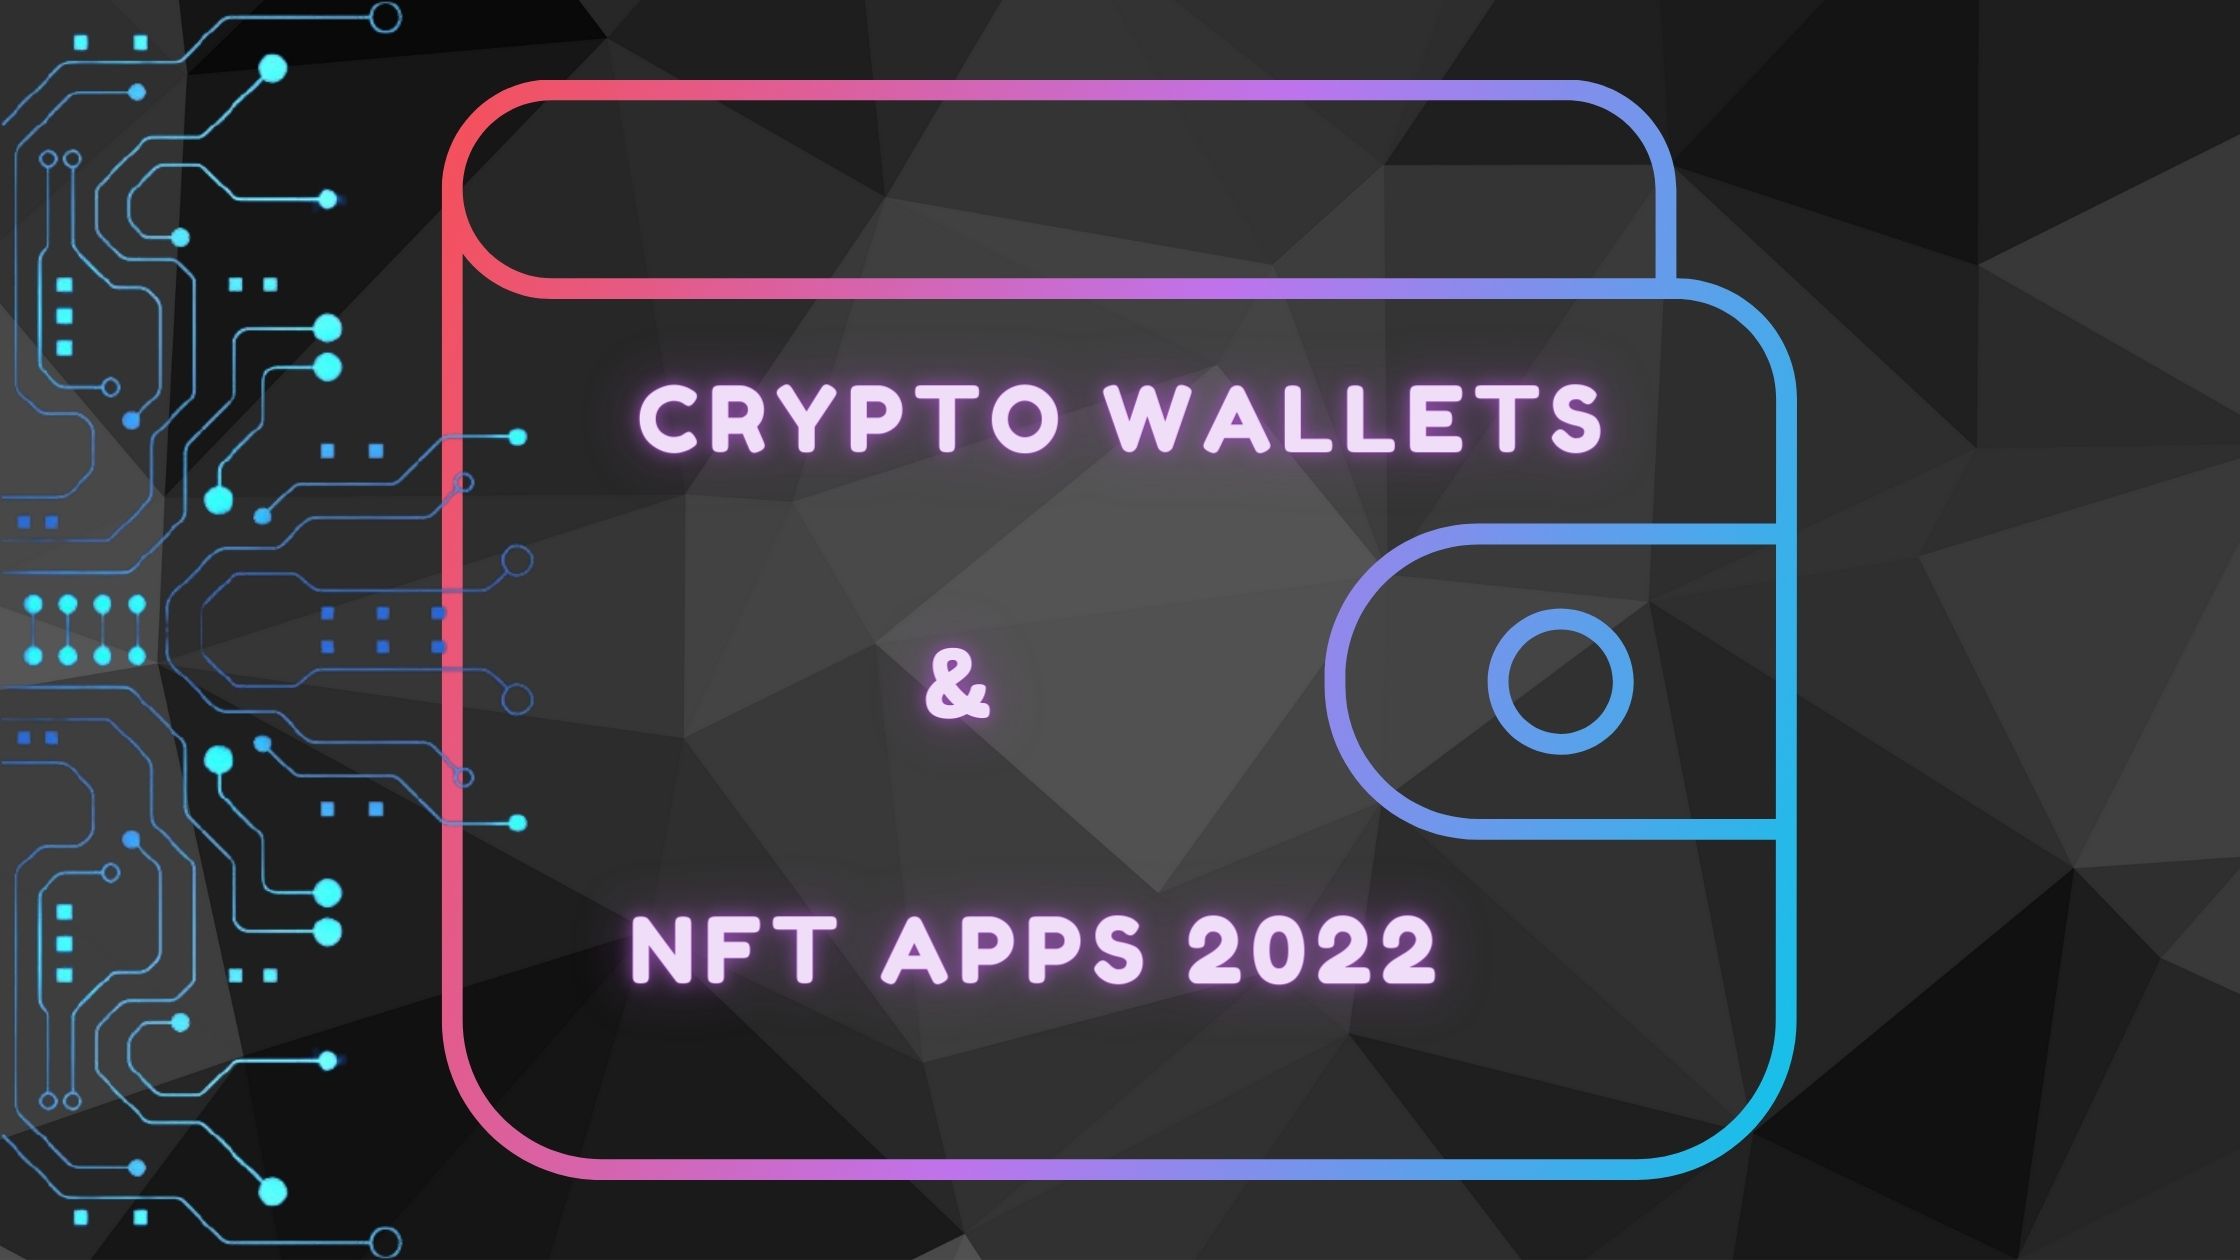 nft apps 2022